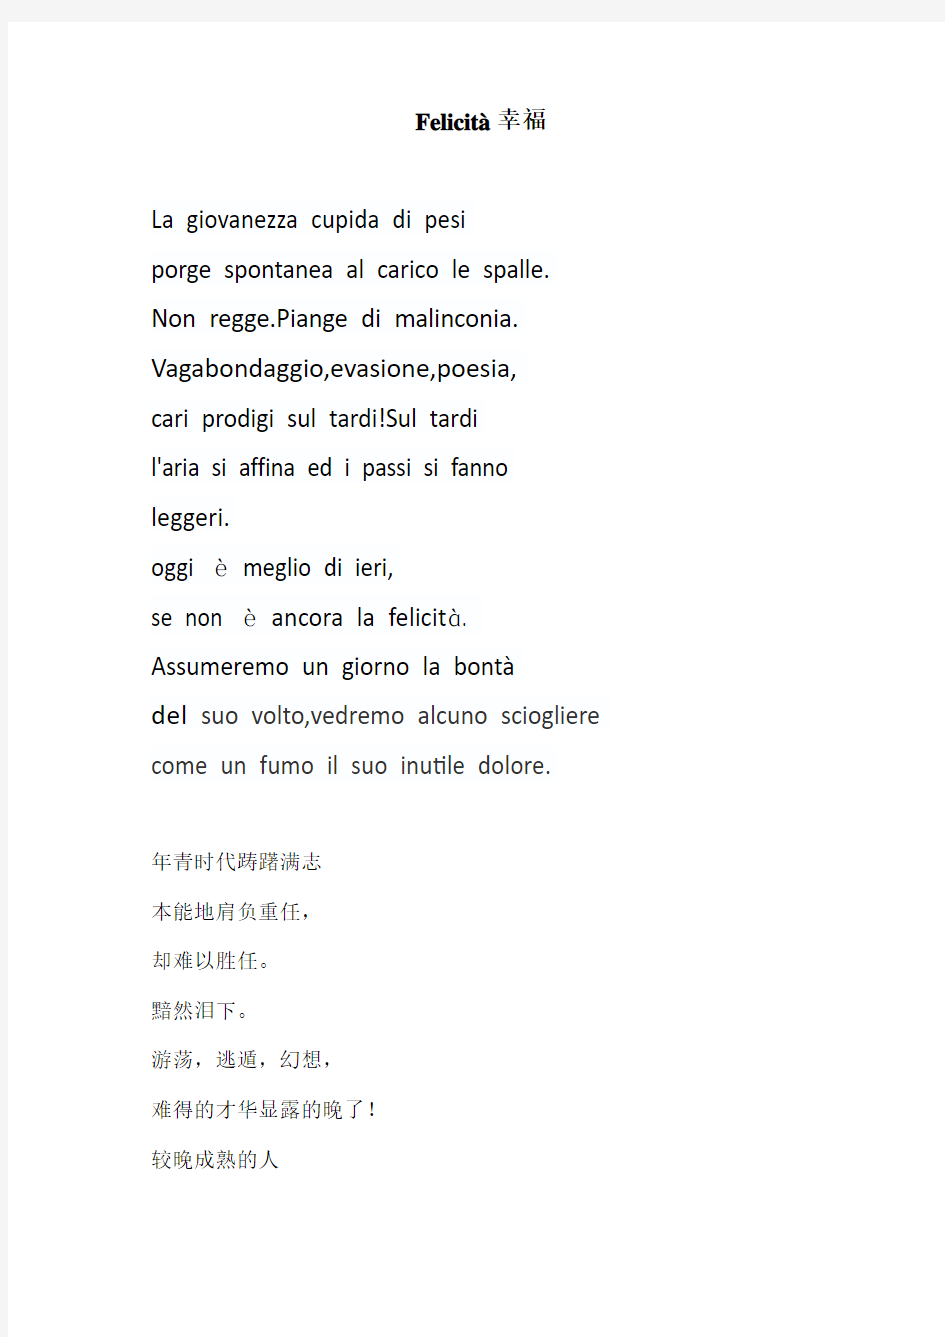 意大利语诗歌 Felicità(幸福)